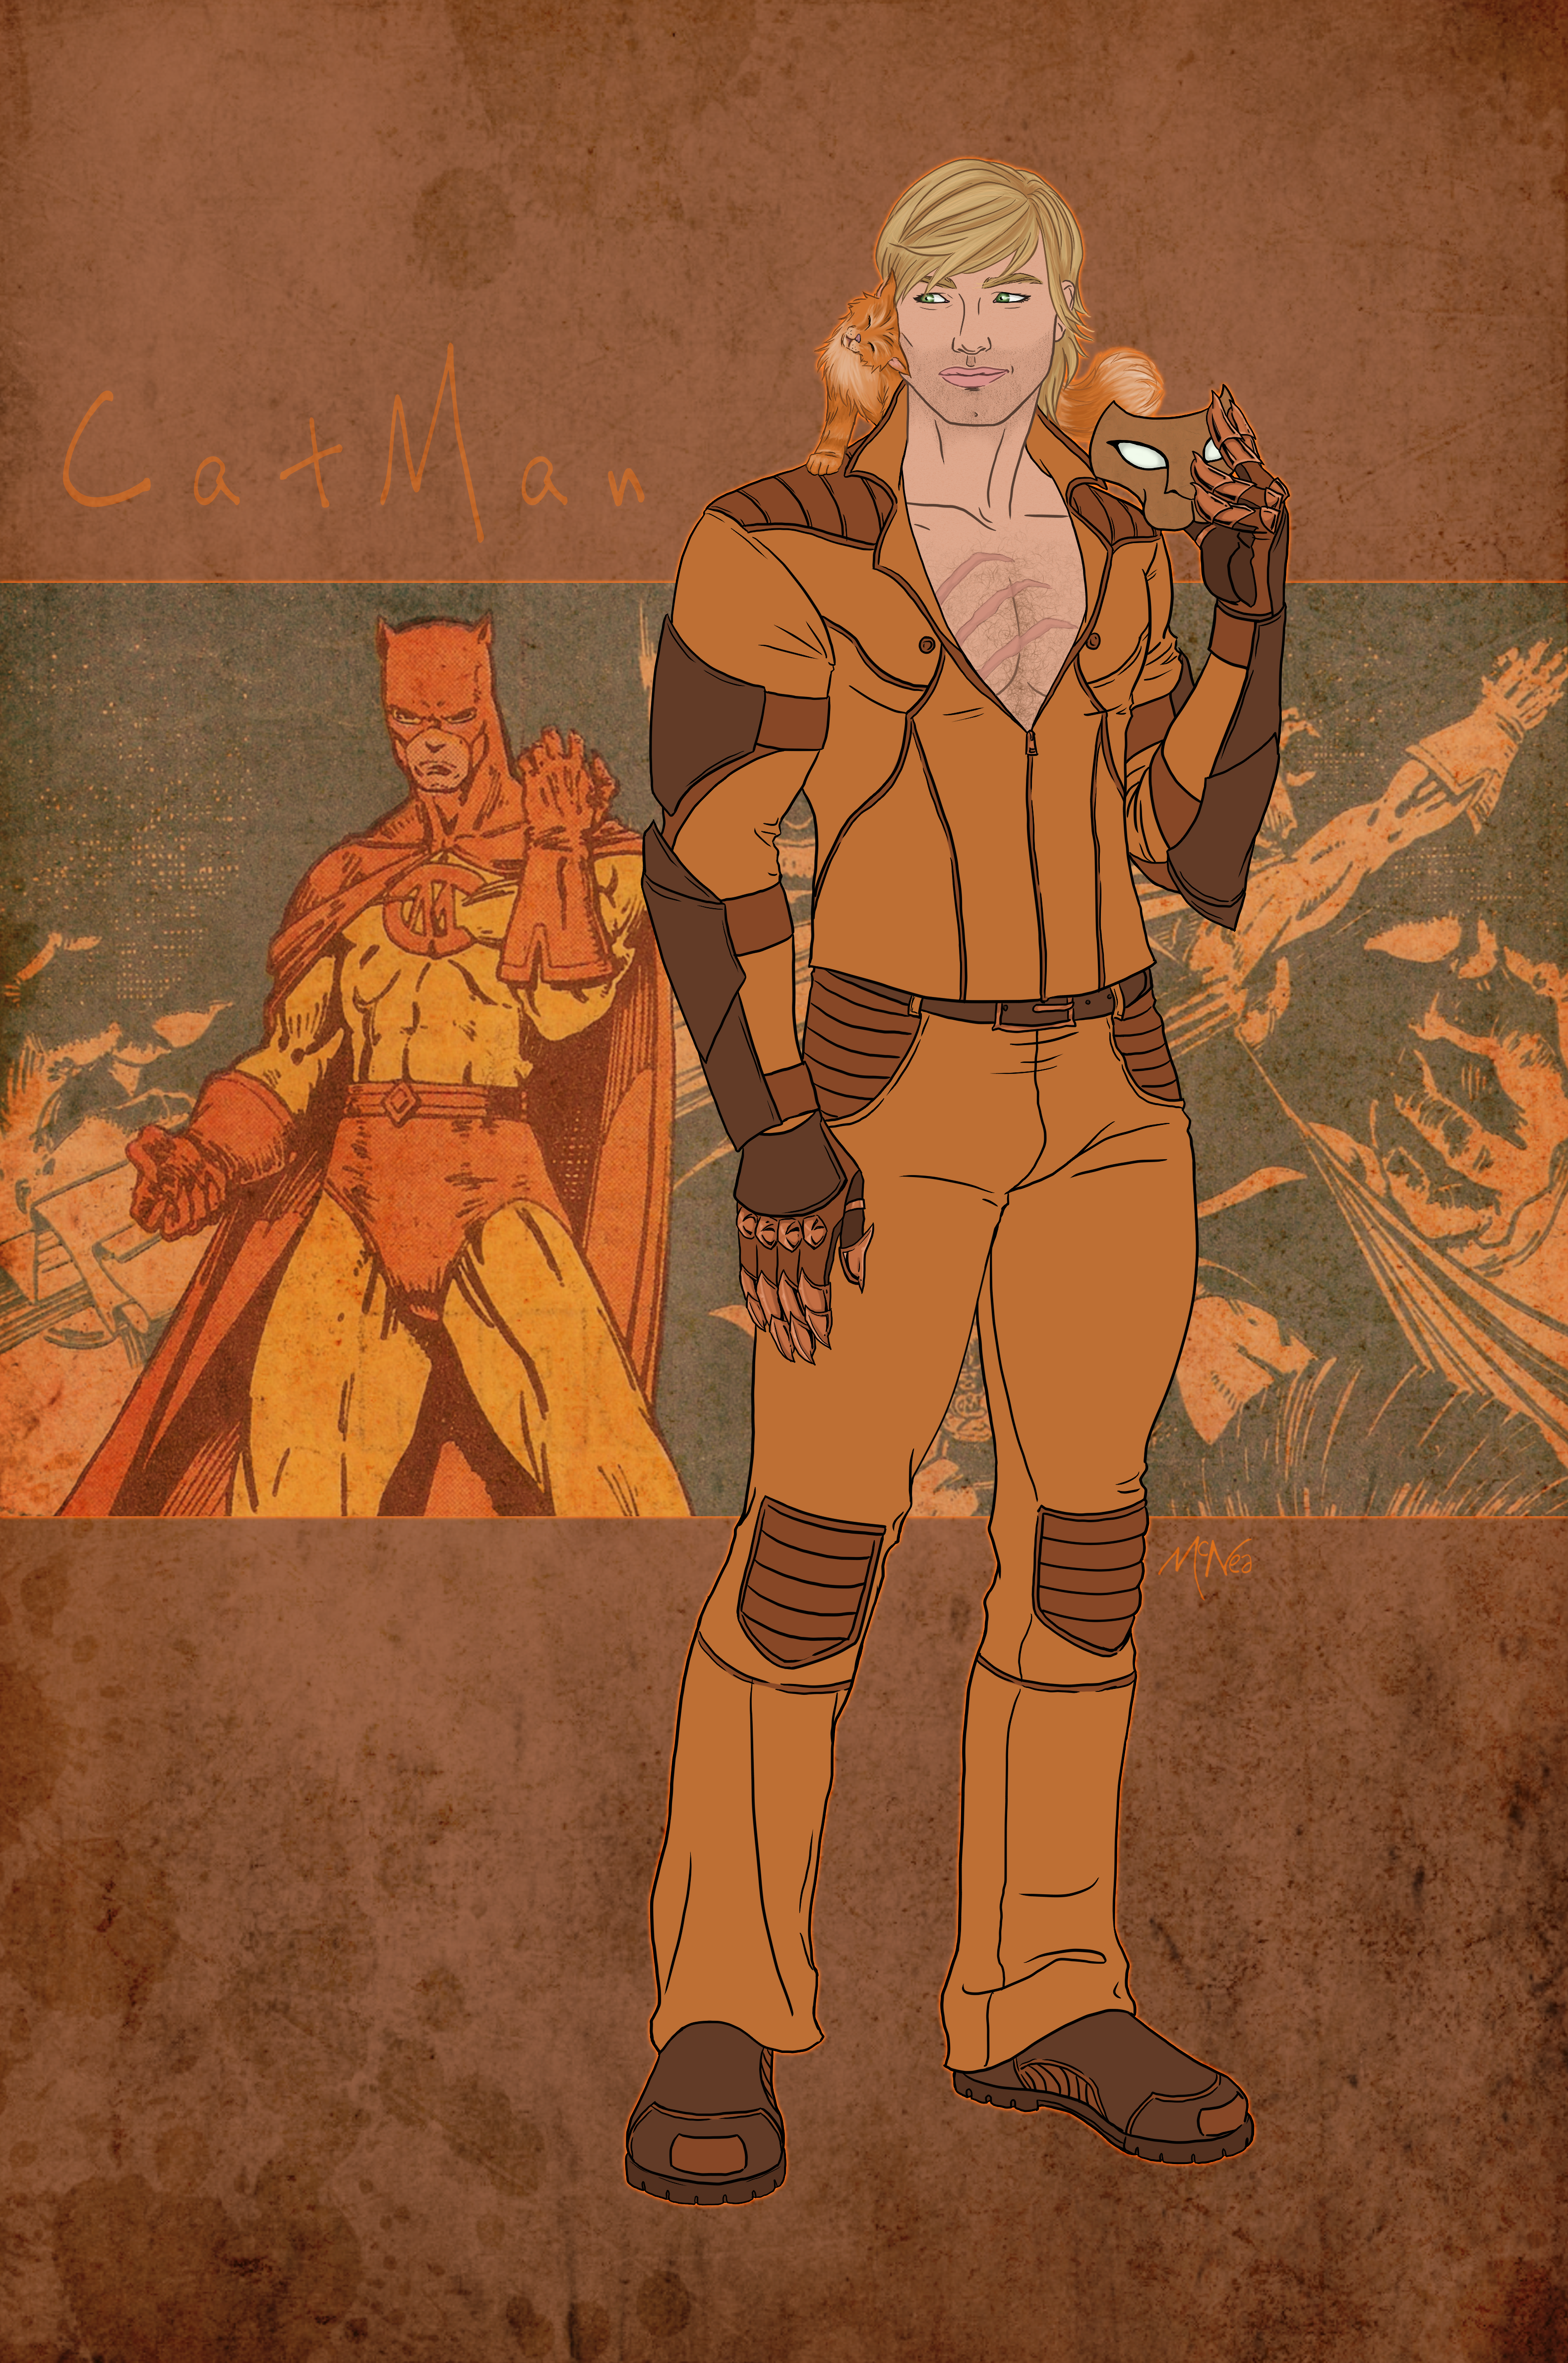 Catman - DC Comics - Secret 6 - Thomas Blake - Gail Simone - Profile 